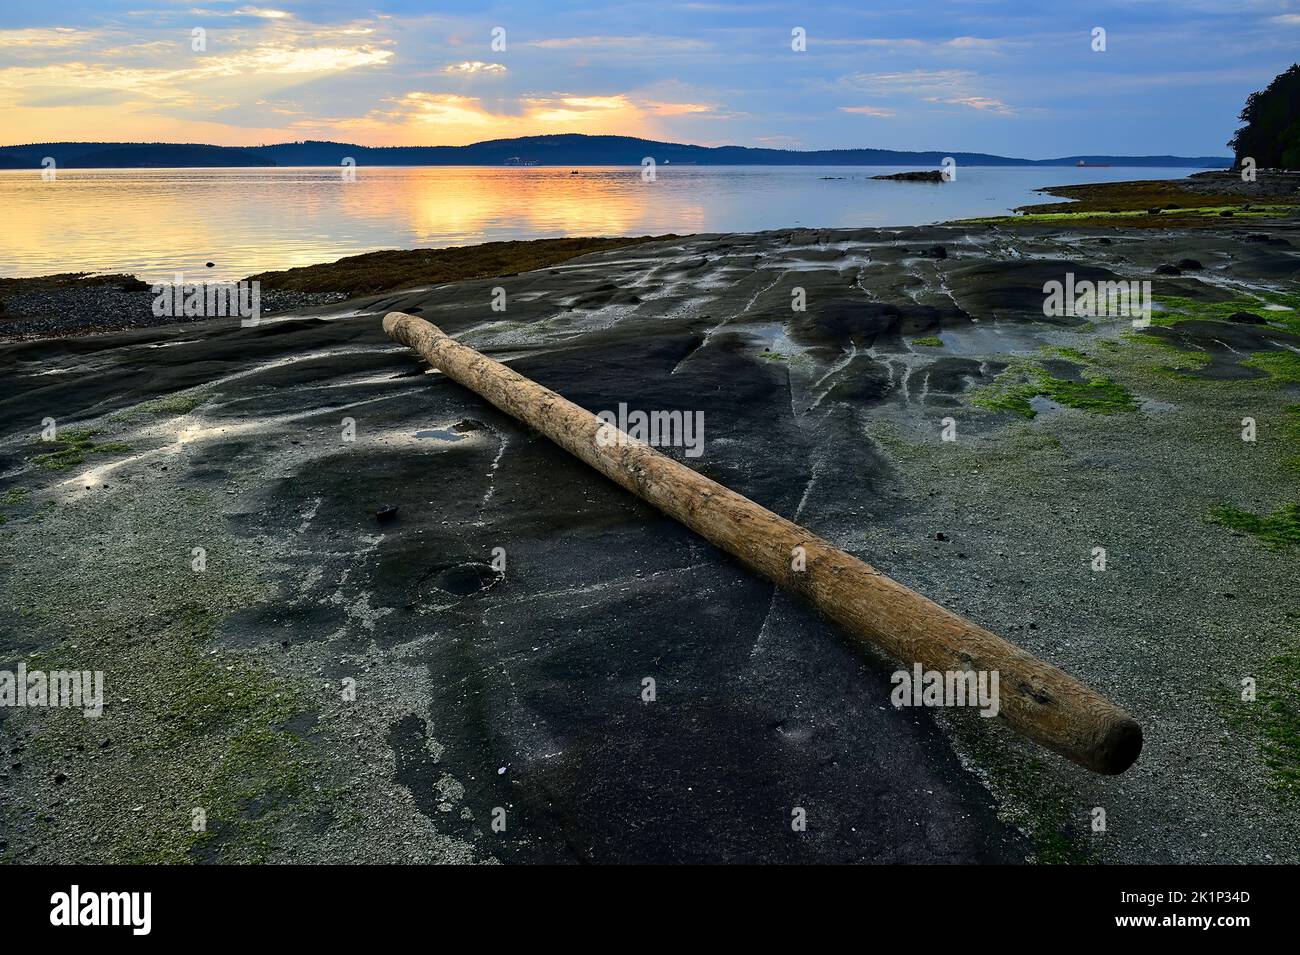 Une bûche à gauche s'est échouée sur une plage rocheuse sur la rive de l'île de Vancouver quand la marée s'est déversée. Banque D'Images